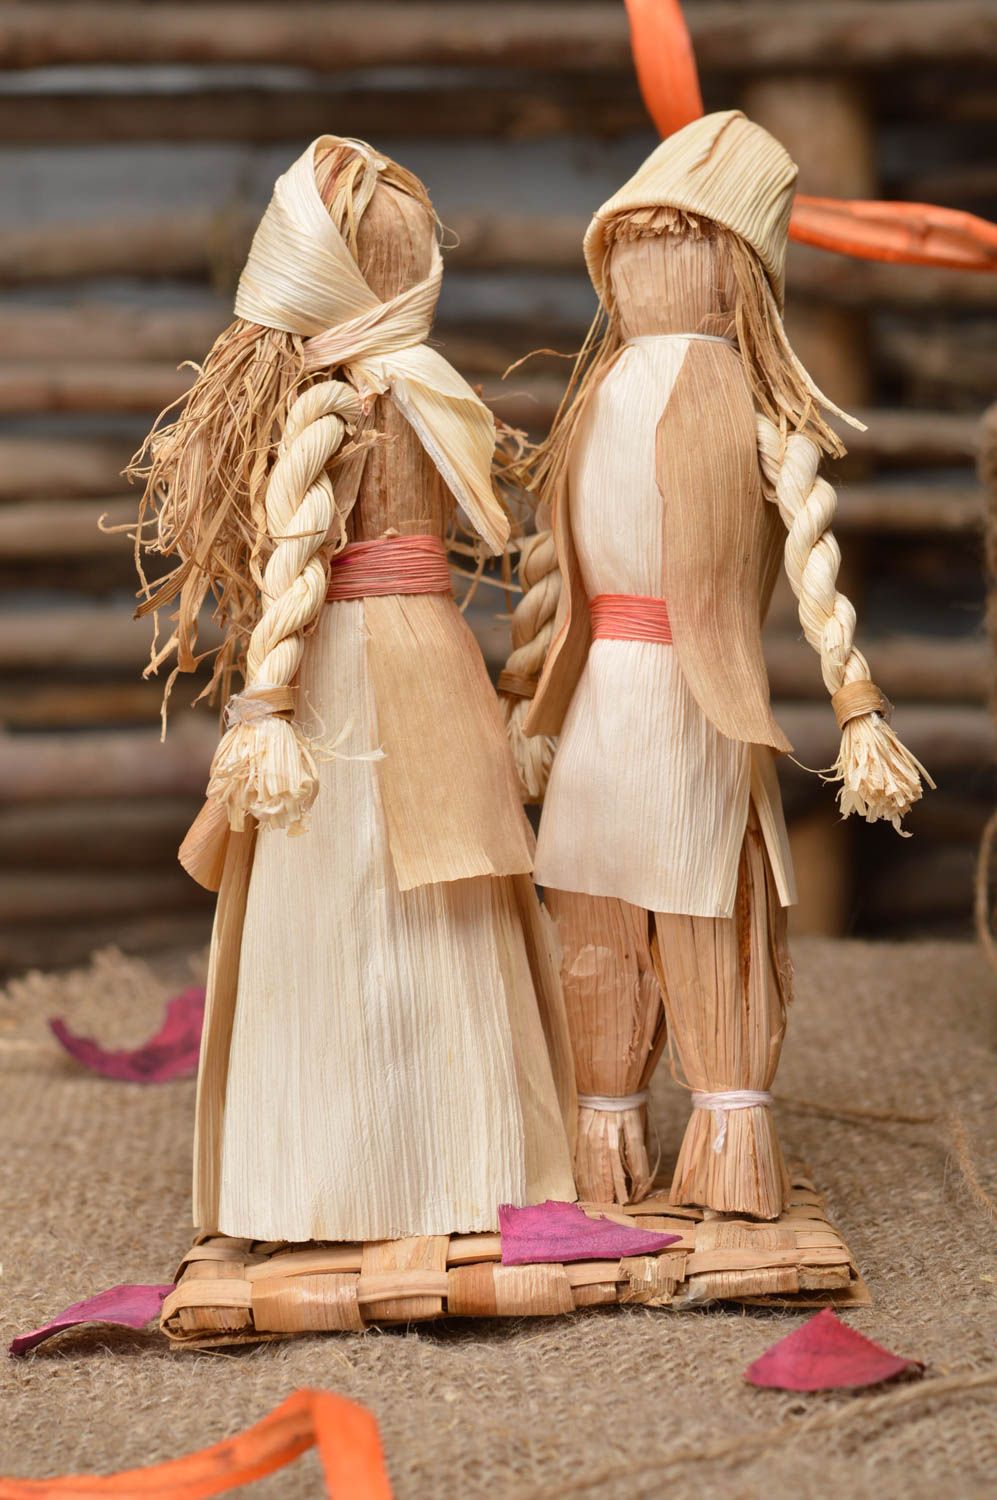 Статуэтки из кукурузных листьев парень и девушка ручной работы эко декор  фото 1